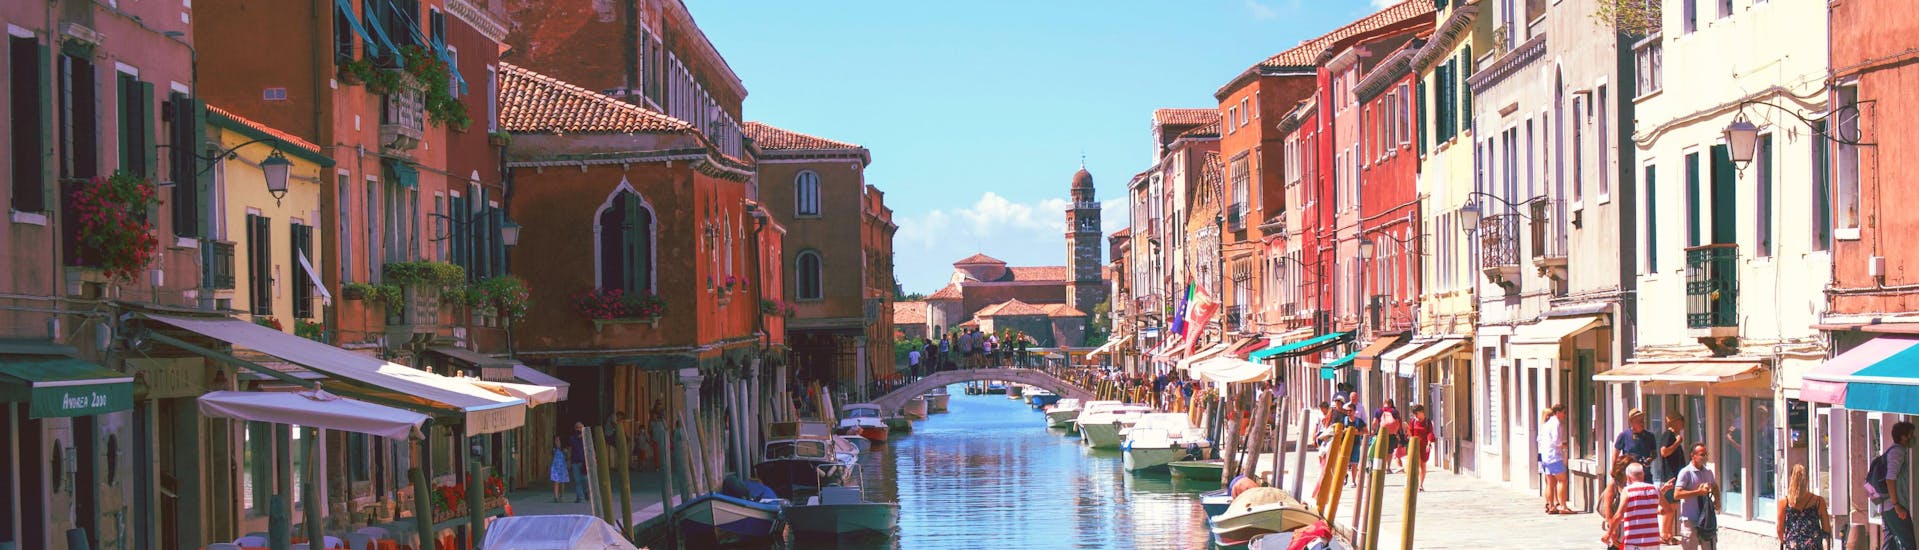 Vista di Burano, un'isola vicino a Venezia che potrete raggiungere con un giro in barca.